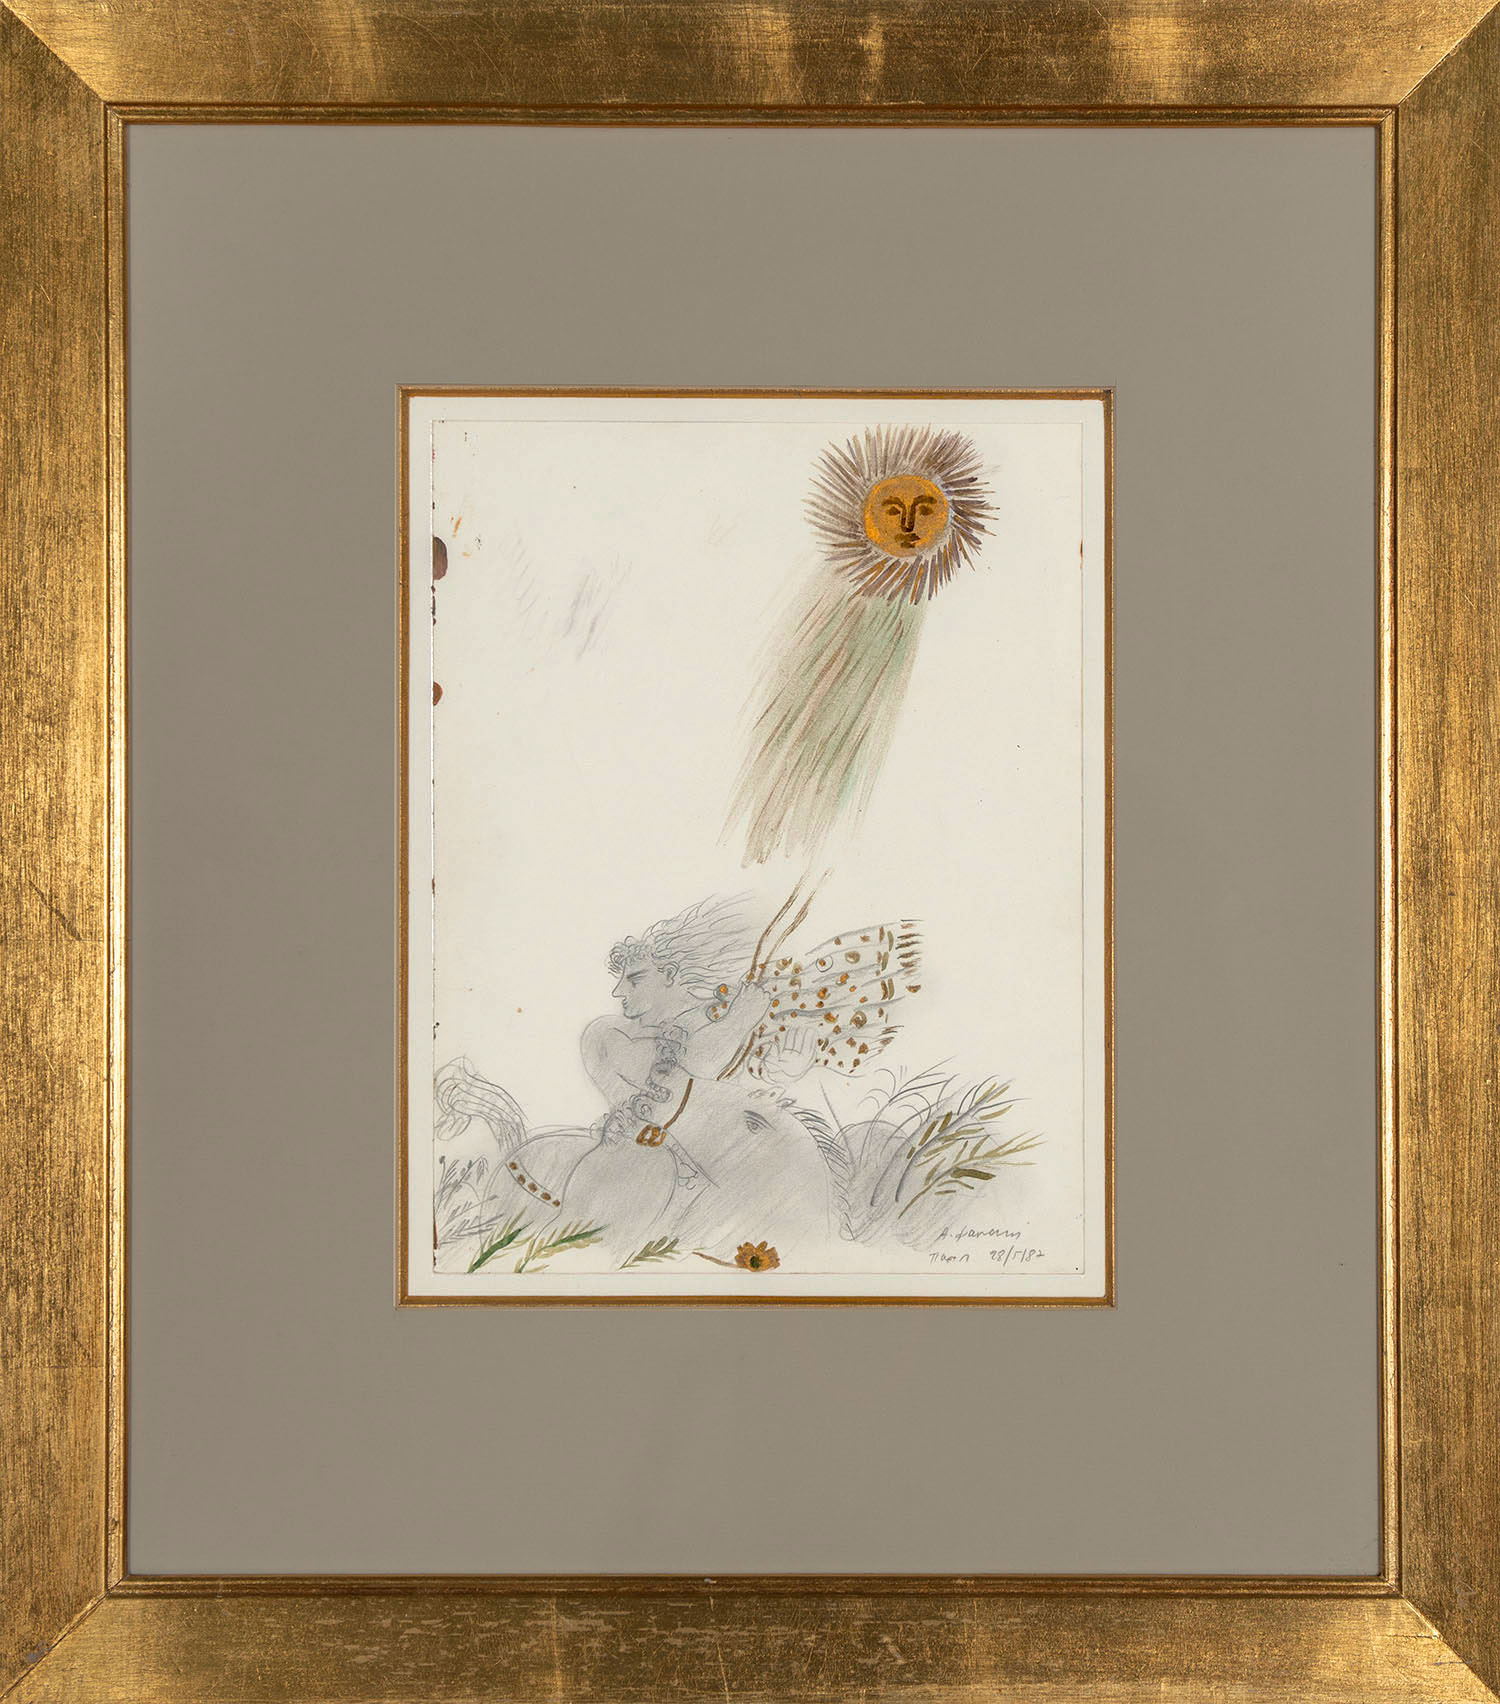 Αλέκος Φασιανός (1935-2022), Χρυσός ήλιος | υπογεγραμμένο και χρονολογημένο κάτω δεξιά: Α. Φασιανός / Παρίσι 28/5/87, υδατογραφία, μολύβι και χρυσό χρώμα σε χαρτί, 31,5 x 24 εκ. © VERGOS Auctions